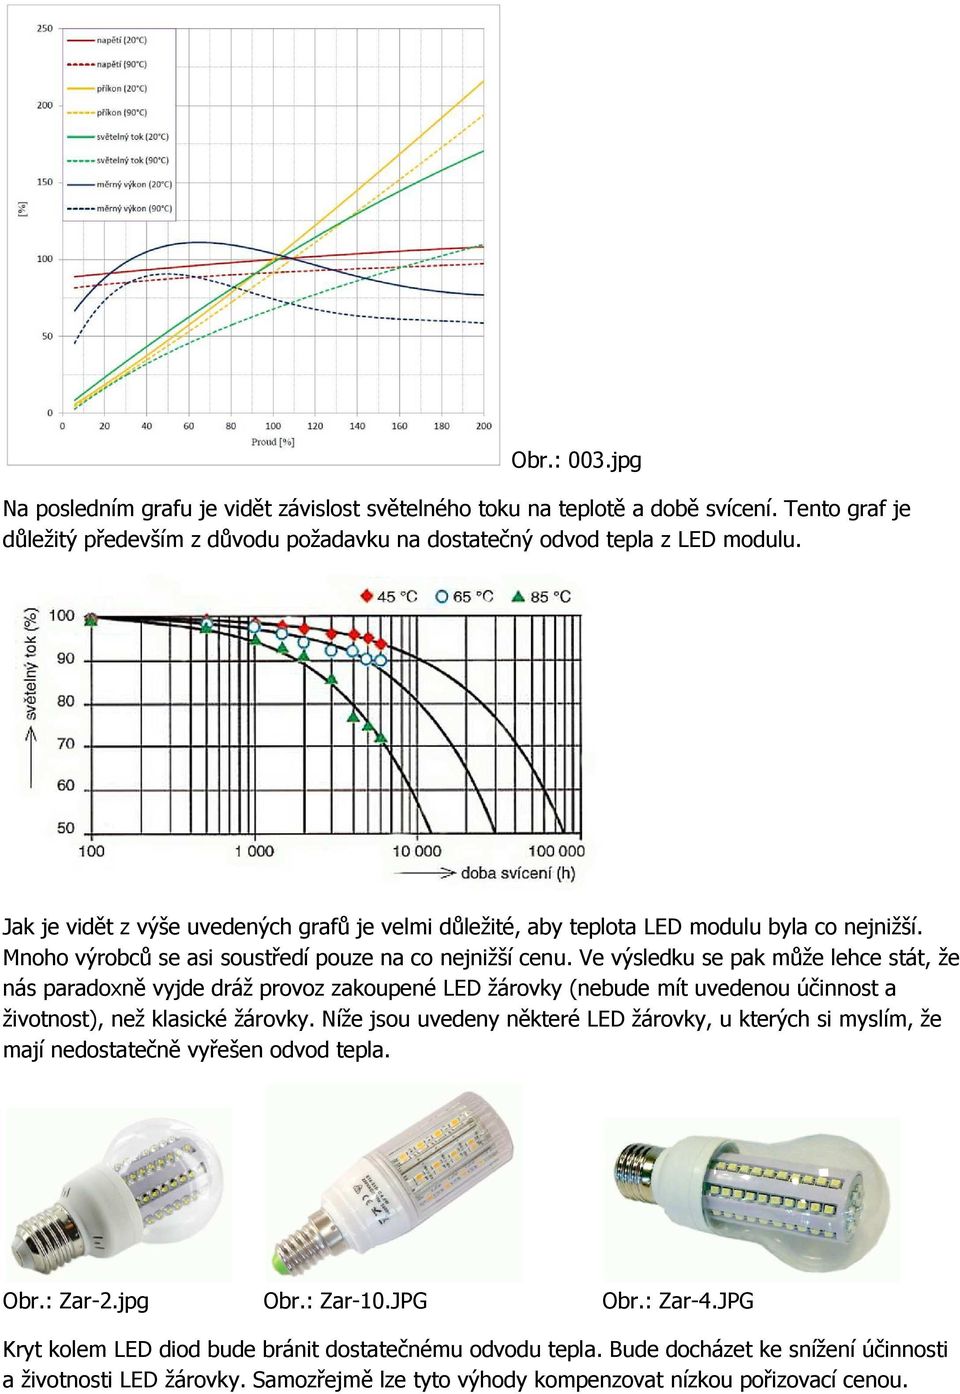 LED žárovka 2 W. Cena, účinnost a životnost - PDF Stažení zdarma